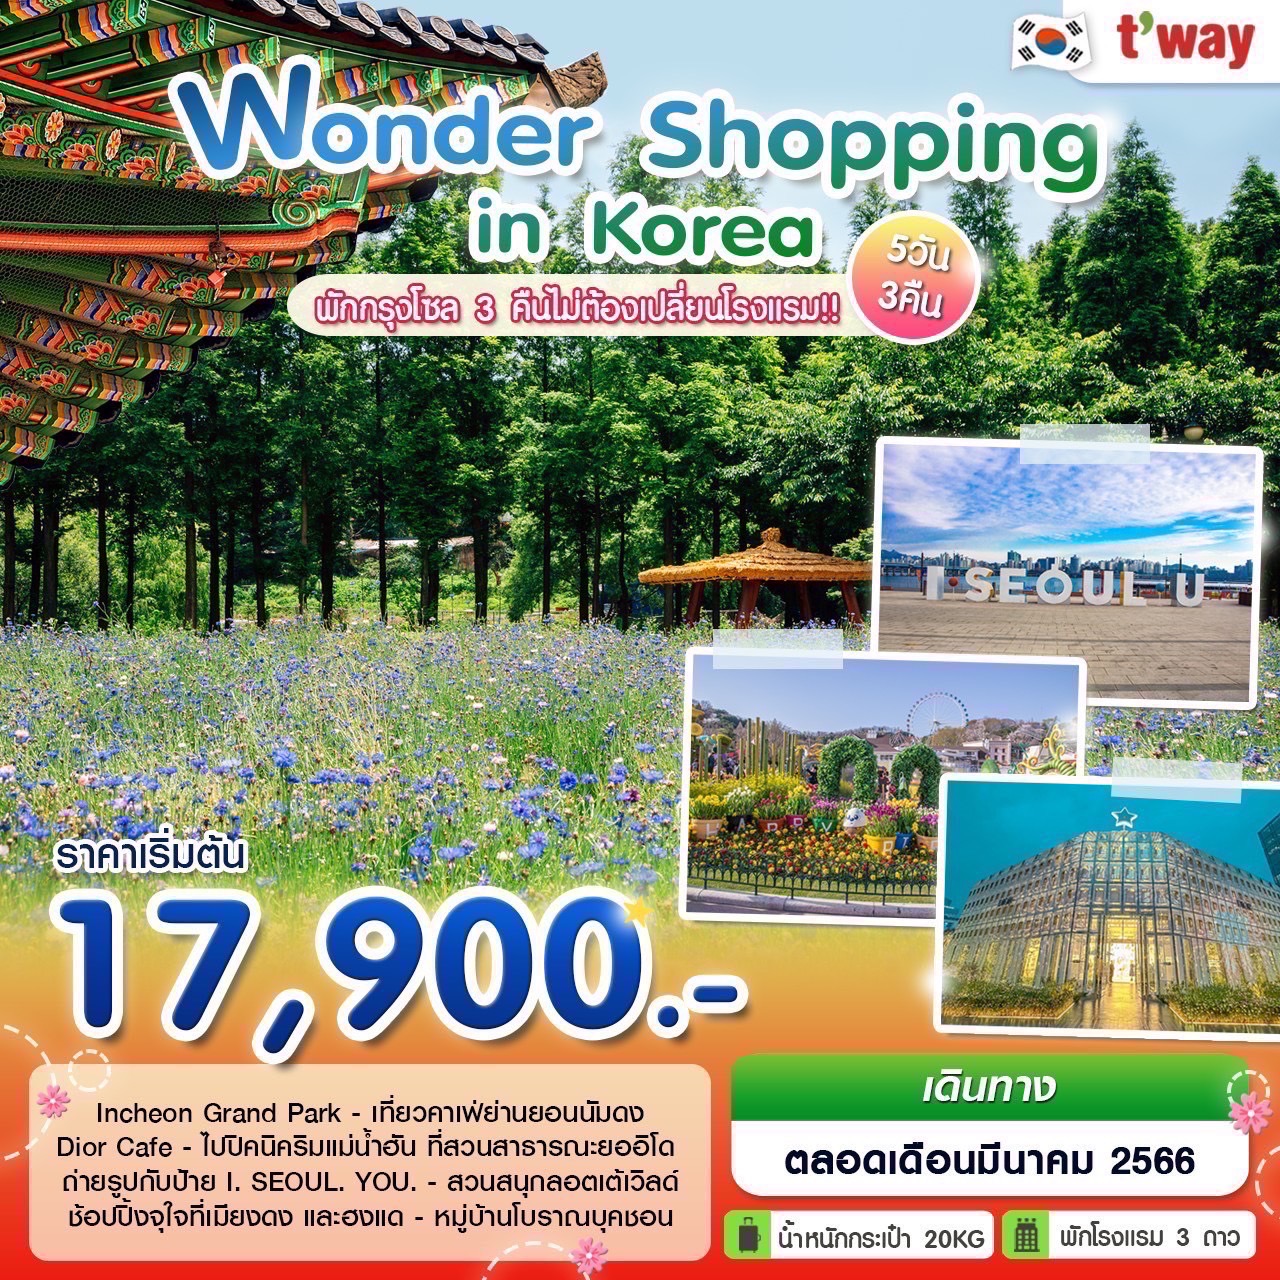 ทัวร์เกาหลีใต้ Wonder Shopping in Korea 5 วัน 3 คืน  (TW) มี.ค. 66